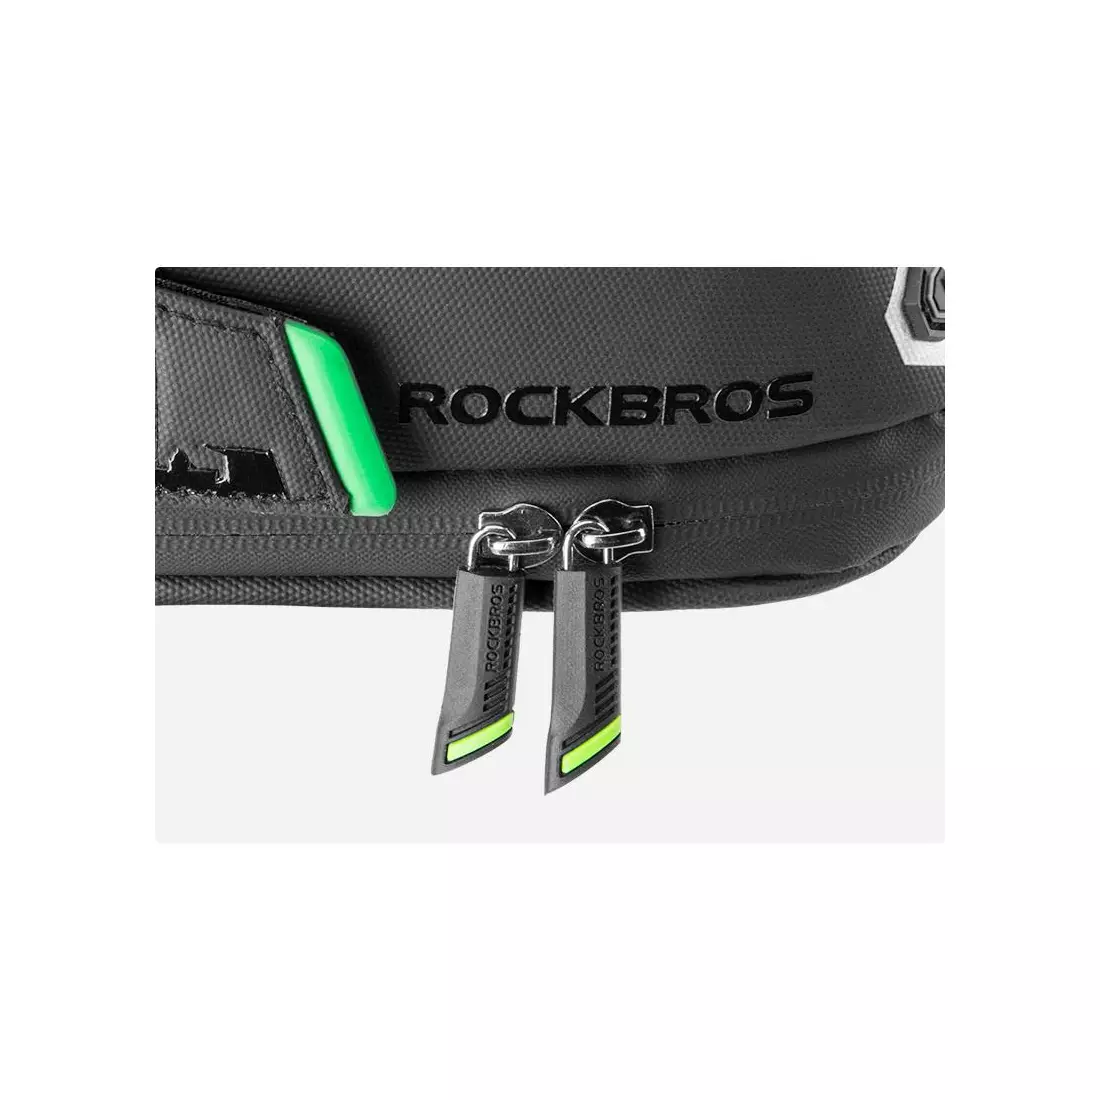 Rockbros bicycle saddle bag LARGE 1.5l, black C27-1